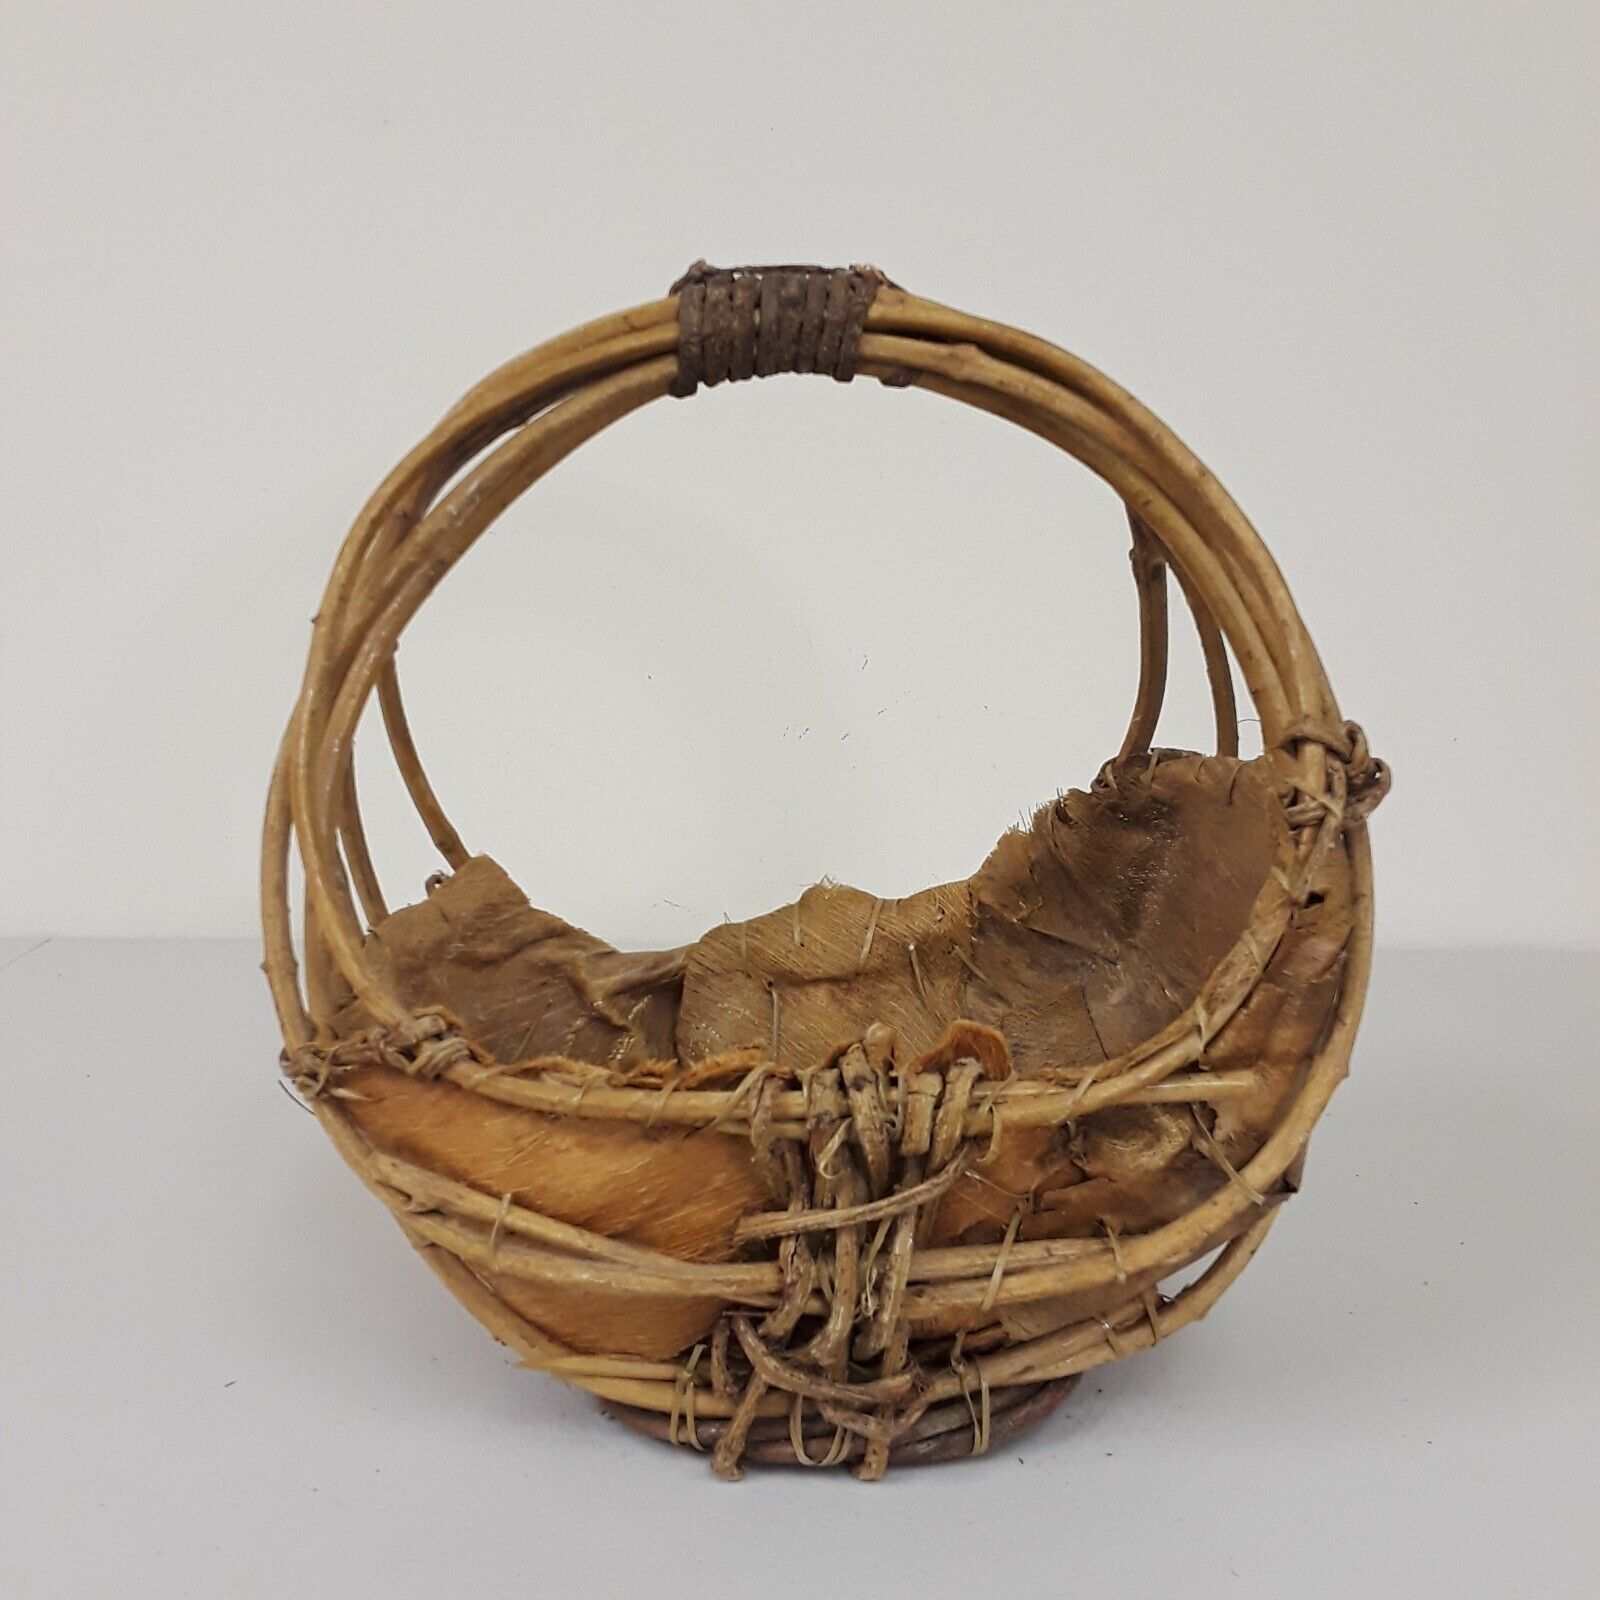 VTG Northern Plains Native American Indian Hand Basket Branch Handle Bark Lined